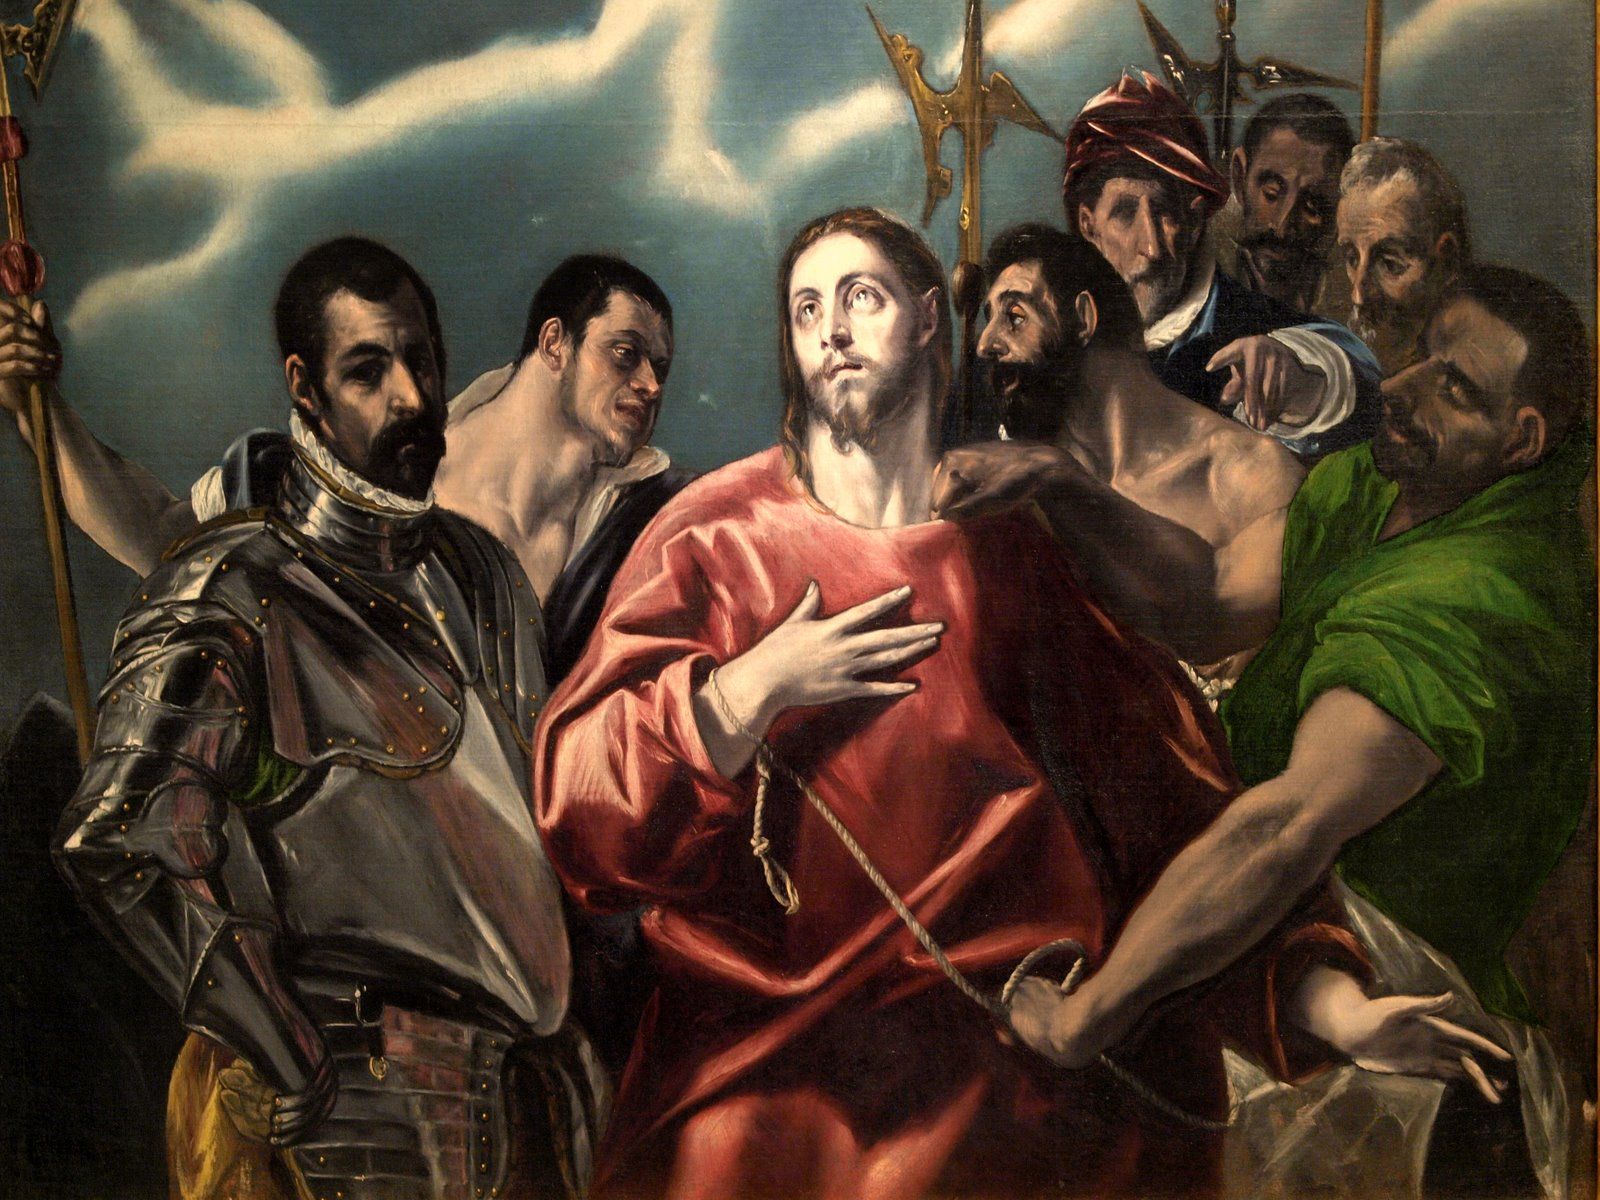 El Greco. Gullrock's Blog